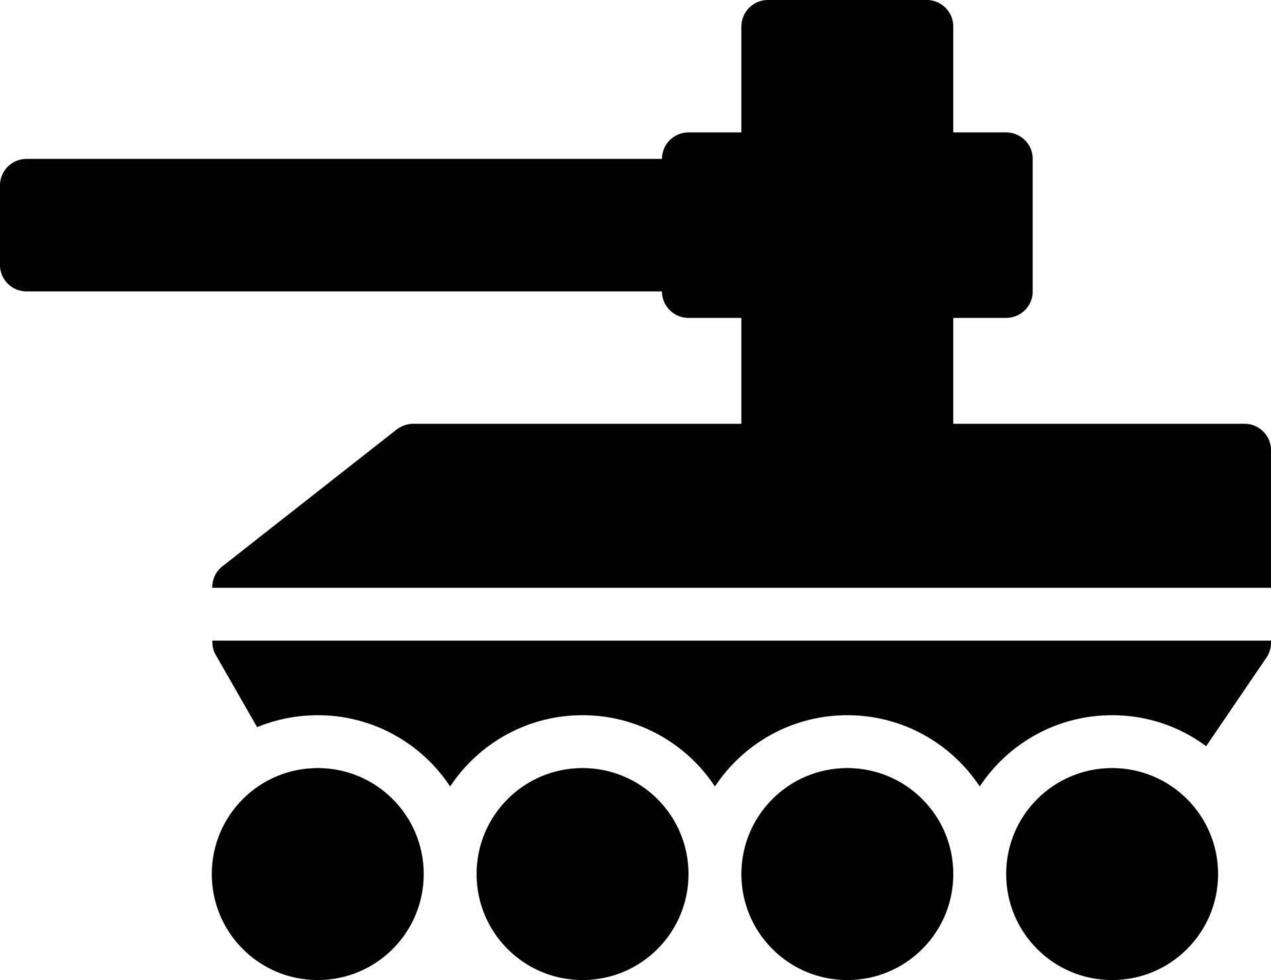 ilustração em vetor tanque do exército em um icons.vector de qualidade background.premium para conceito e design gráfico.